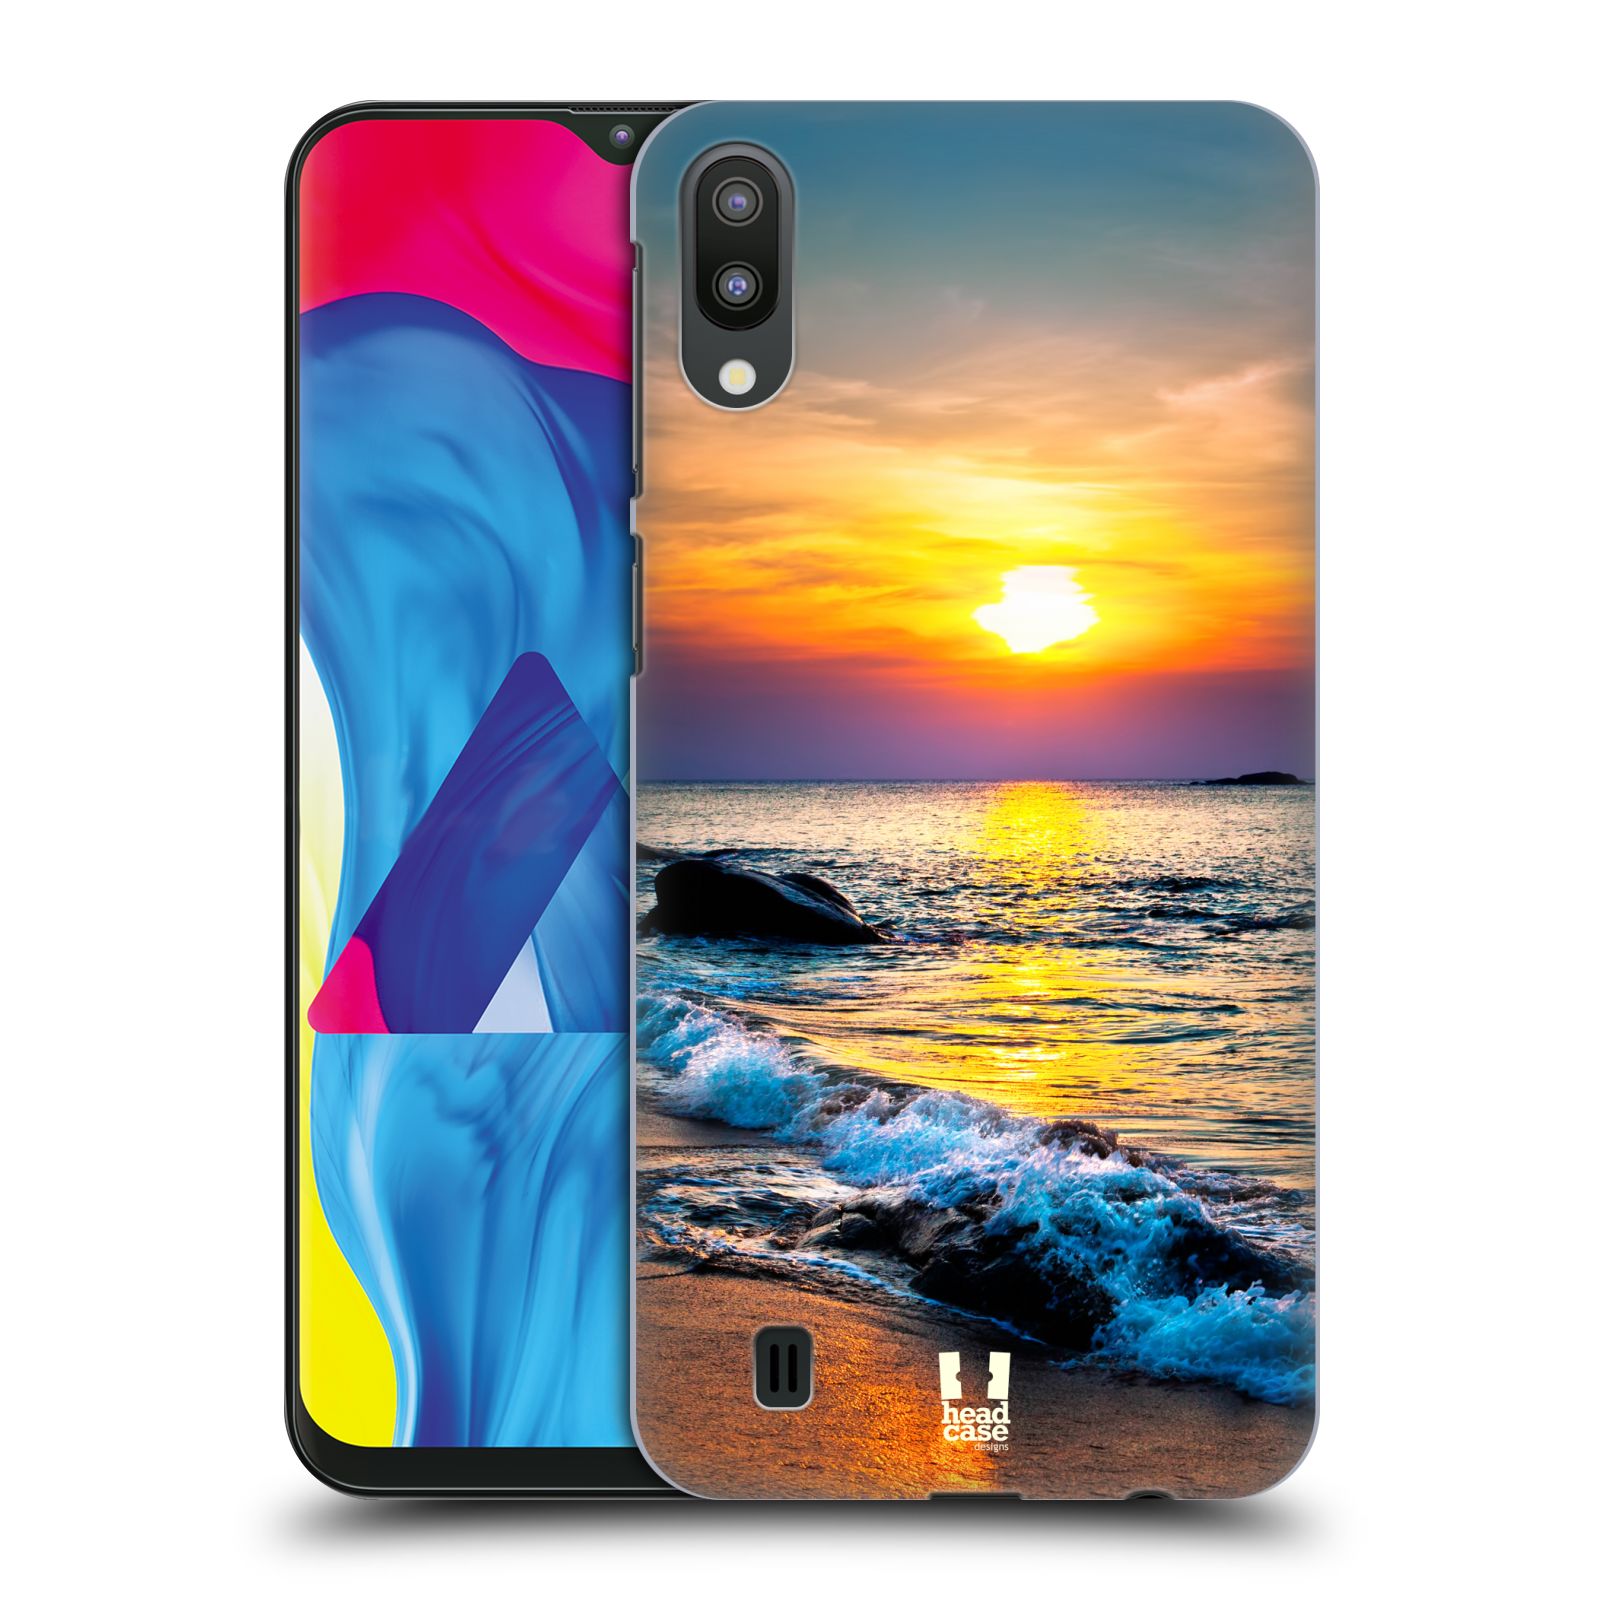 Plastový obal HEAD CASE na mobil Samsung Galaxy M10 vzor Pláže a Moře barevný západ slunce